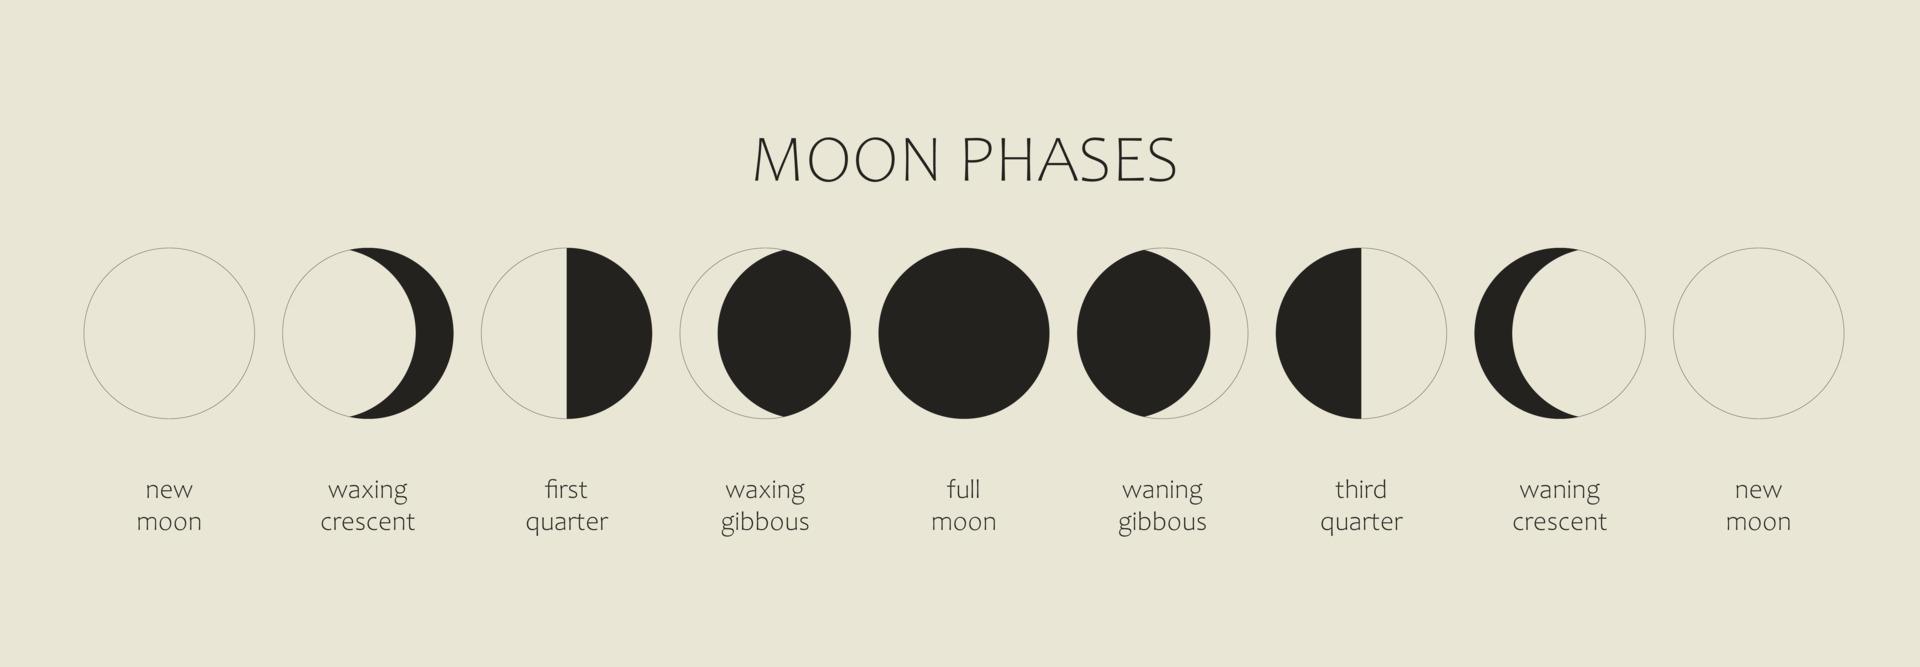 månen, månfaser på en svart bakgrund. hela cykeln från nymåne till fullmåne. astronomi och månkalender vektorillustration vektor